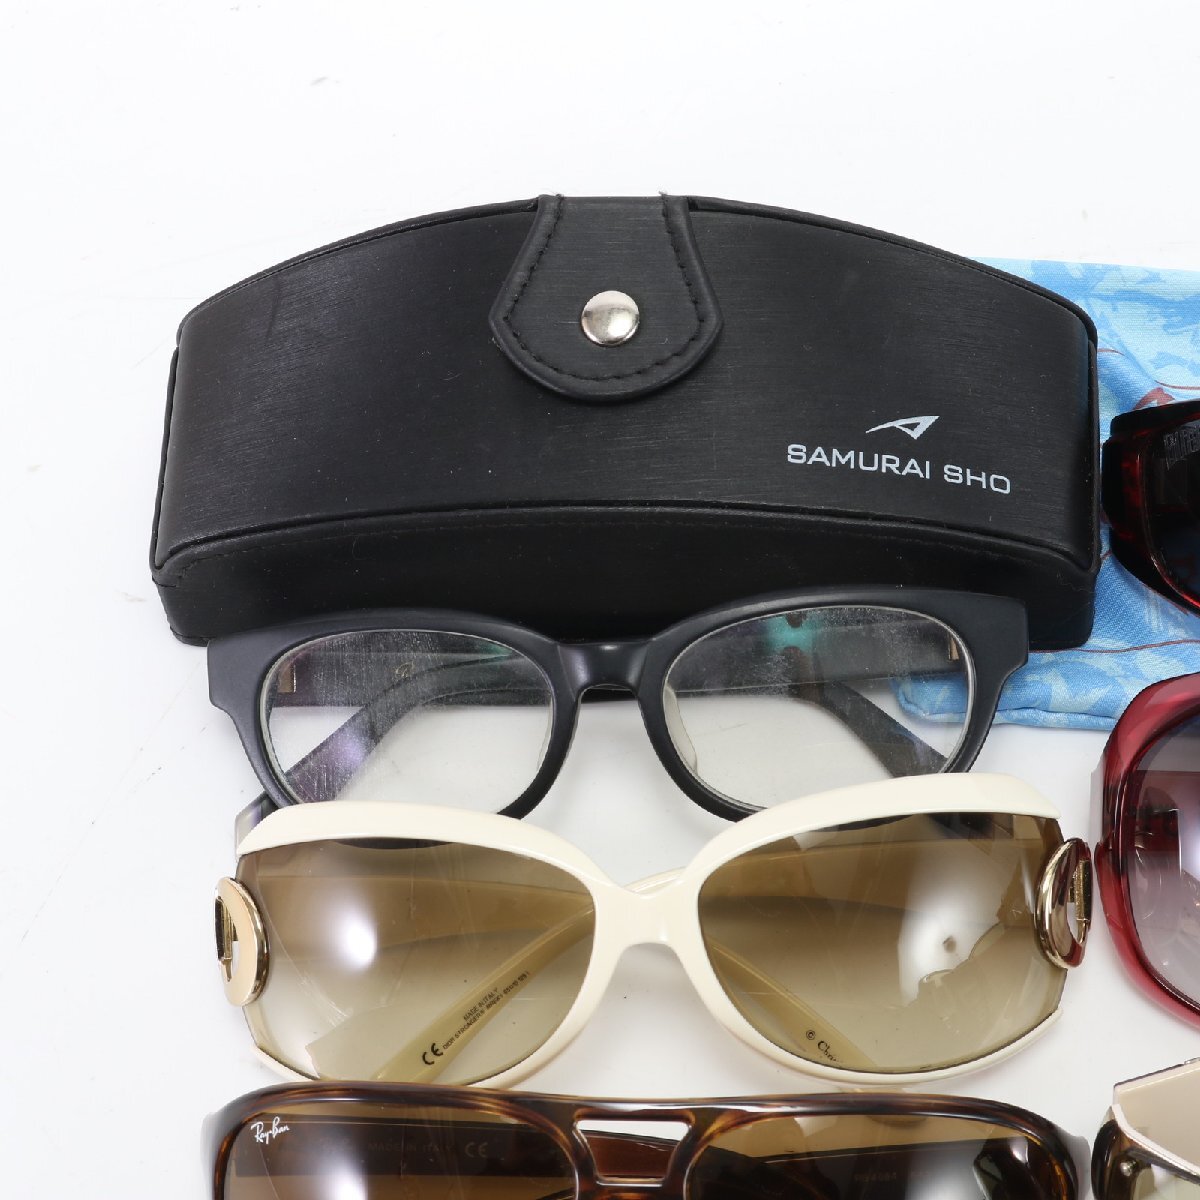 1 иен # Dior RayBan и т.п. суммировать 8 позиций комплект # солнцезащитные очки кейс очки очки I одежда аксессуары мужской женский EFE R5-8